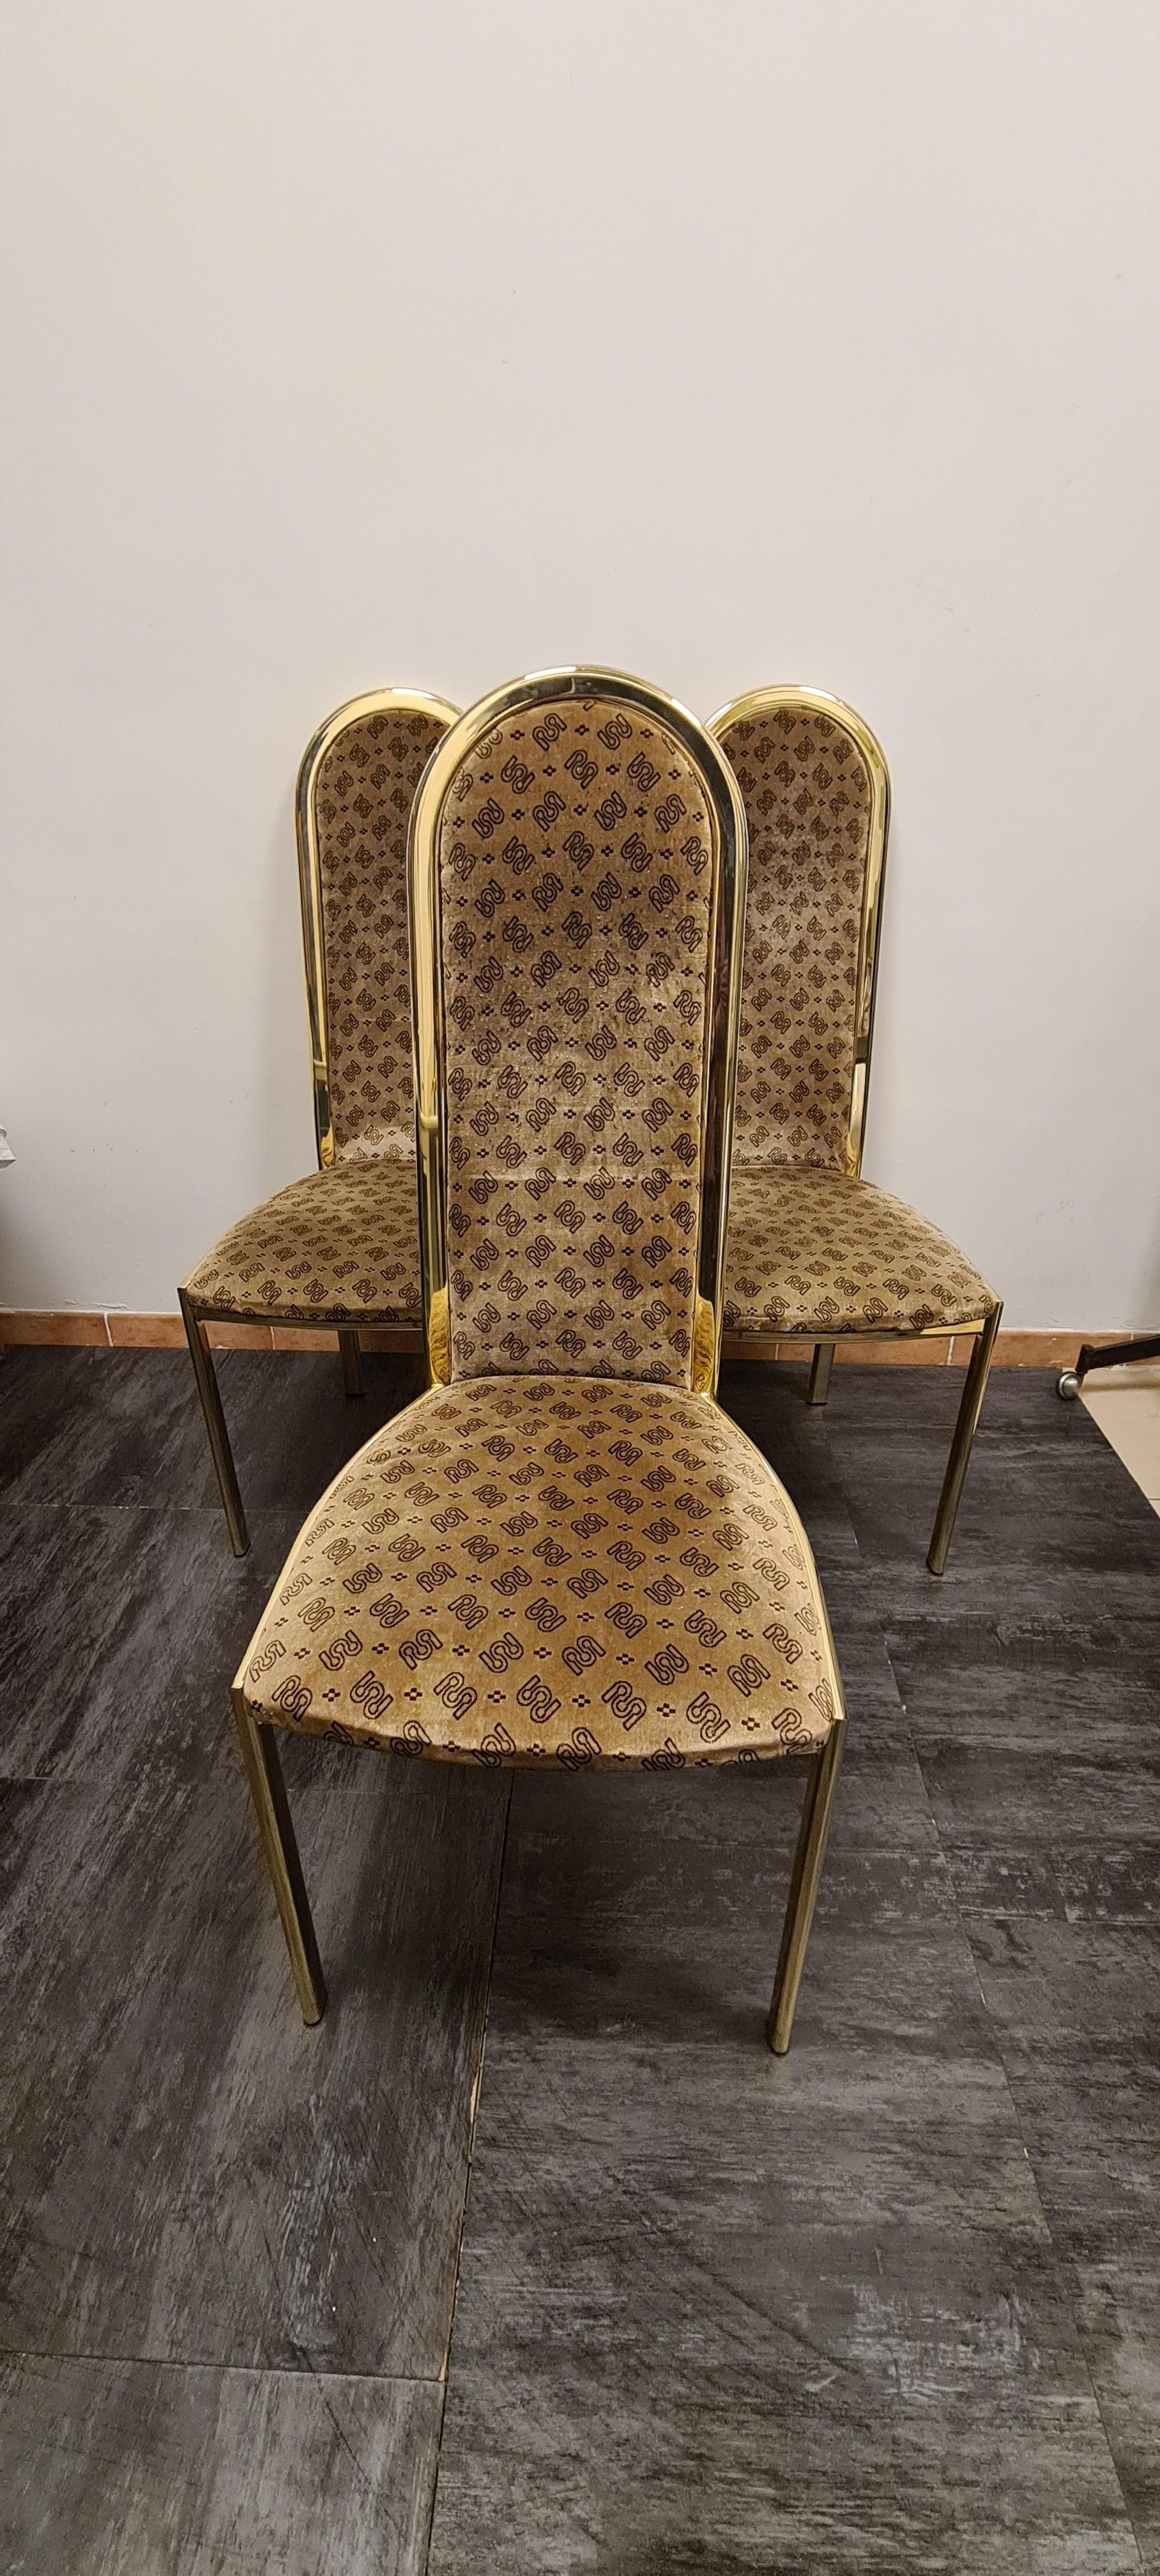 Trois chaises dorées de la société Morex, années 1970.

Chaises élégantes à haut dossier en métal galvanisé et velours.

Depuis de nombreuses années, la société Morex est l'un des principaux fabricants de meubles en métal galvanisé.

Intactes et